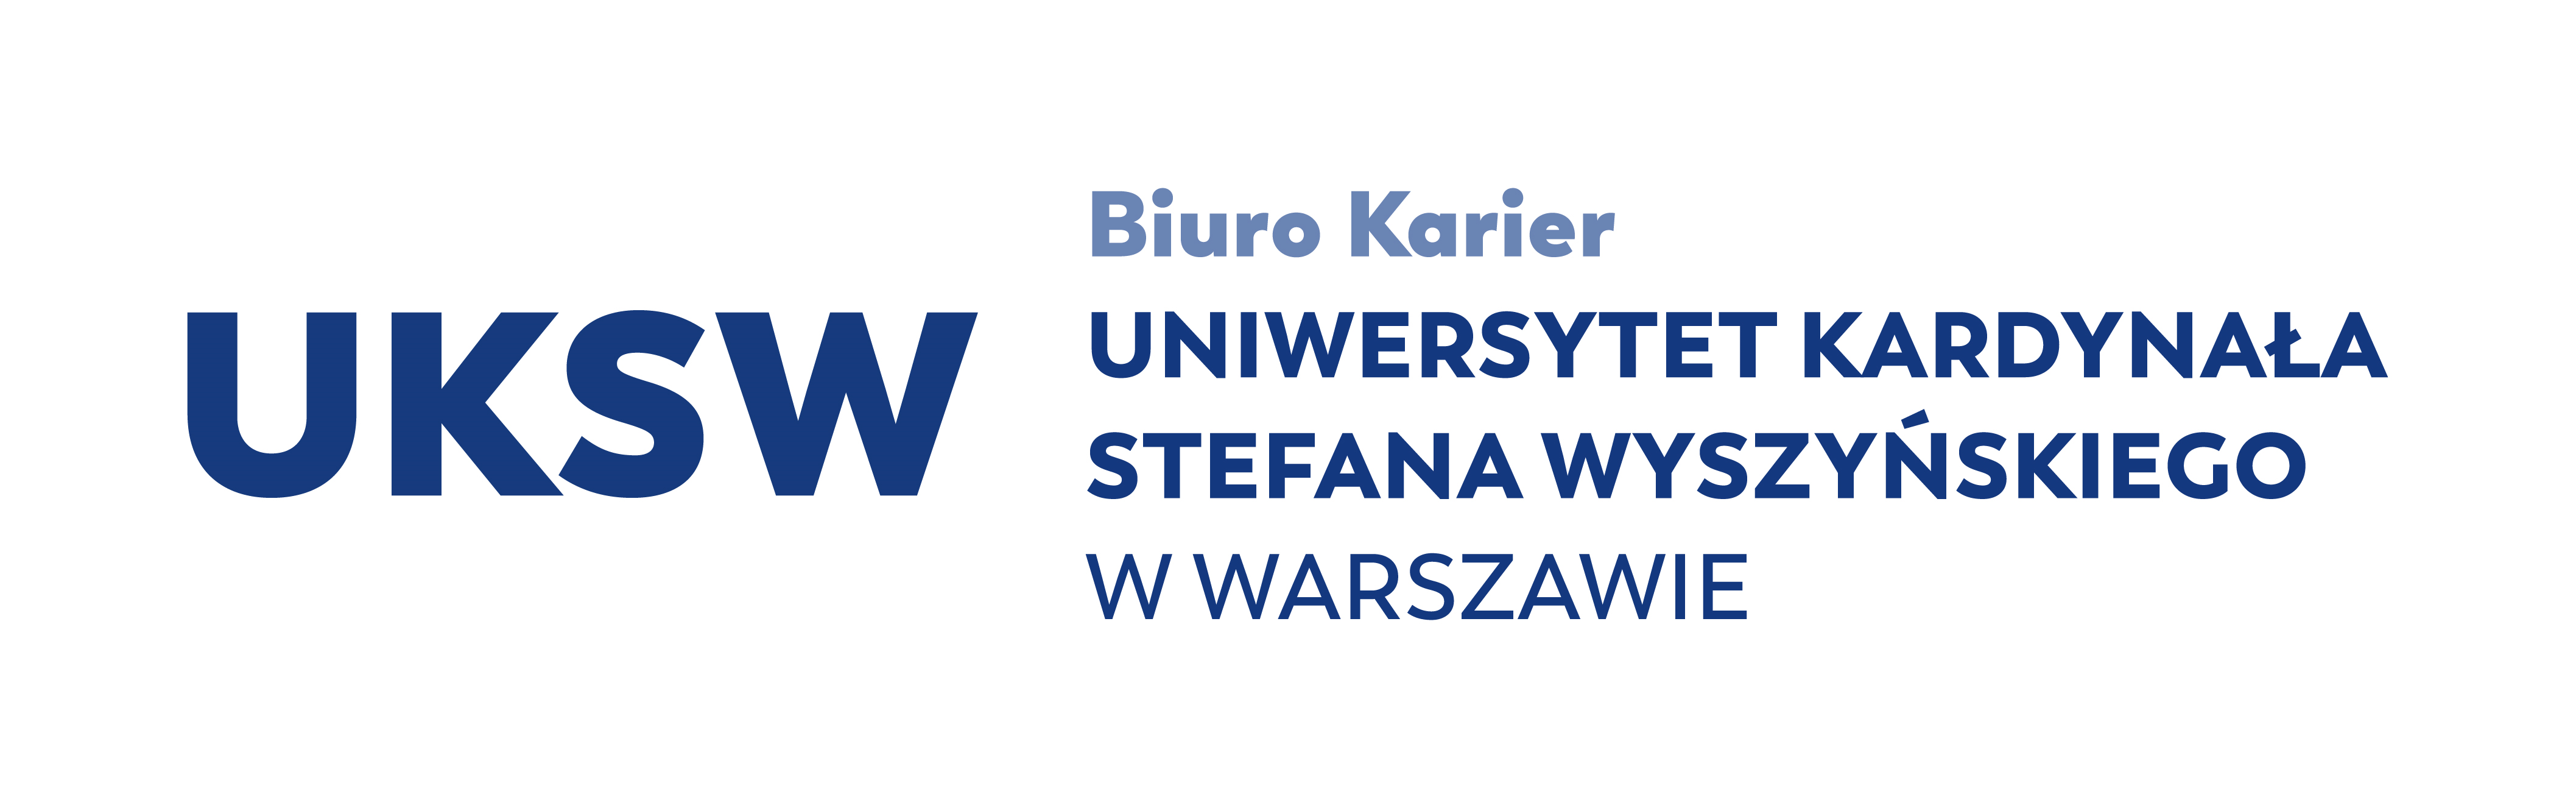 Uniwersytet Kardynała Stefana Wyszyńskiego w Warszawie 